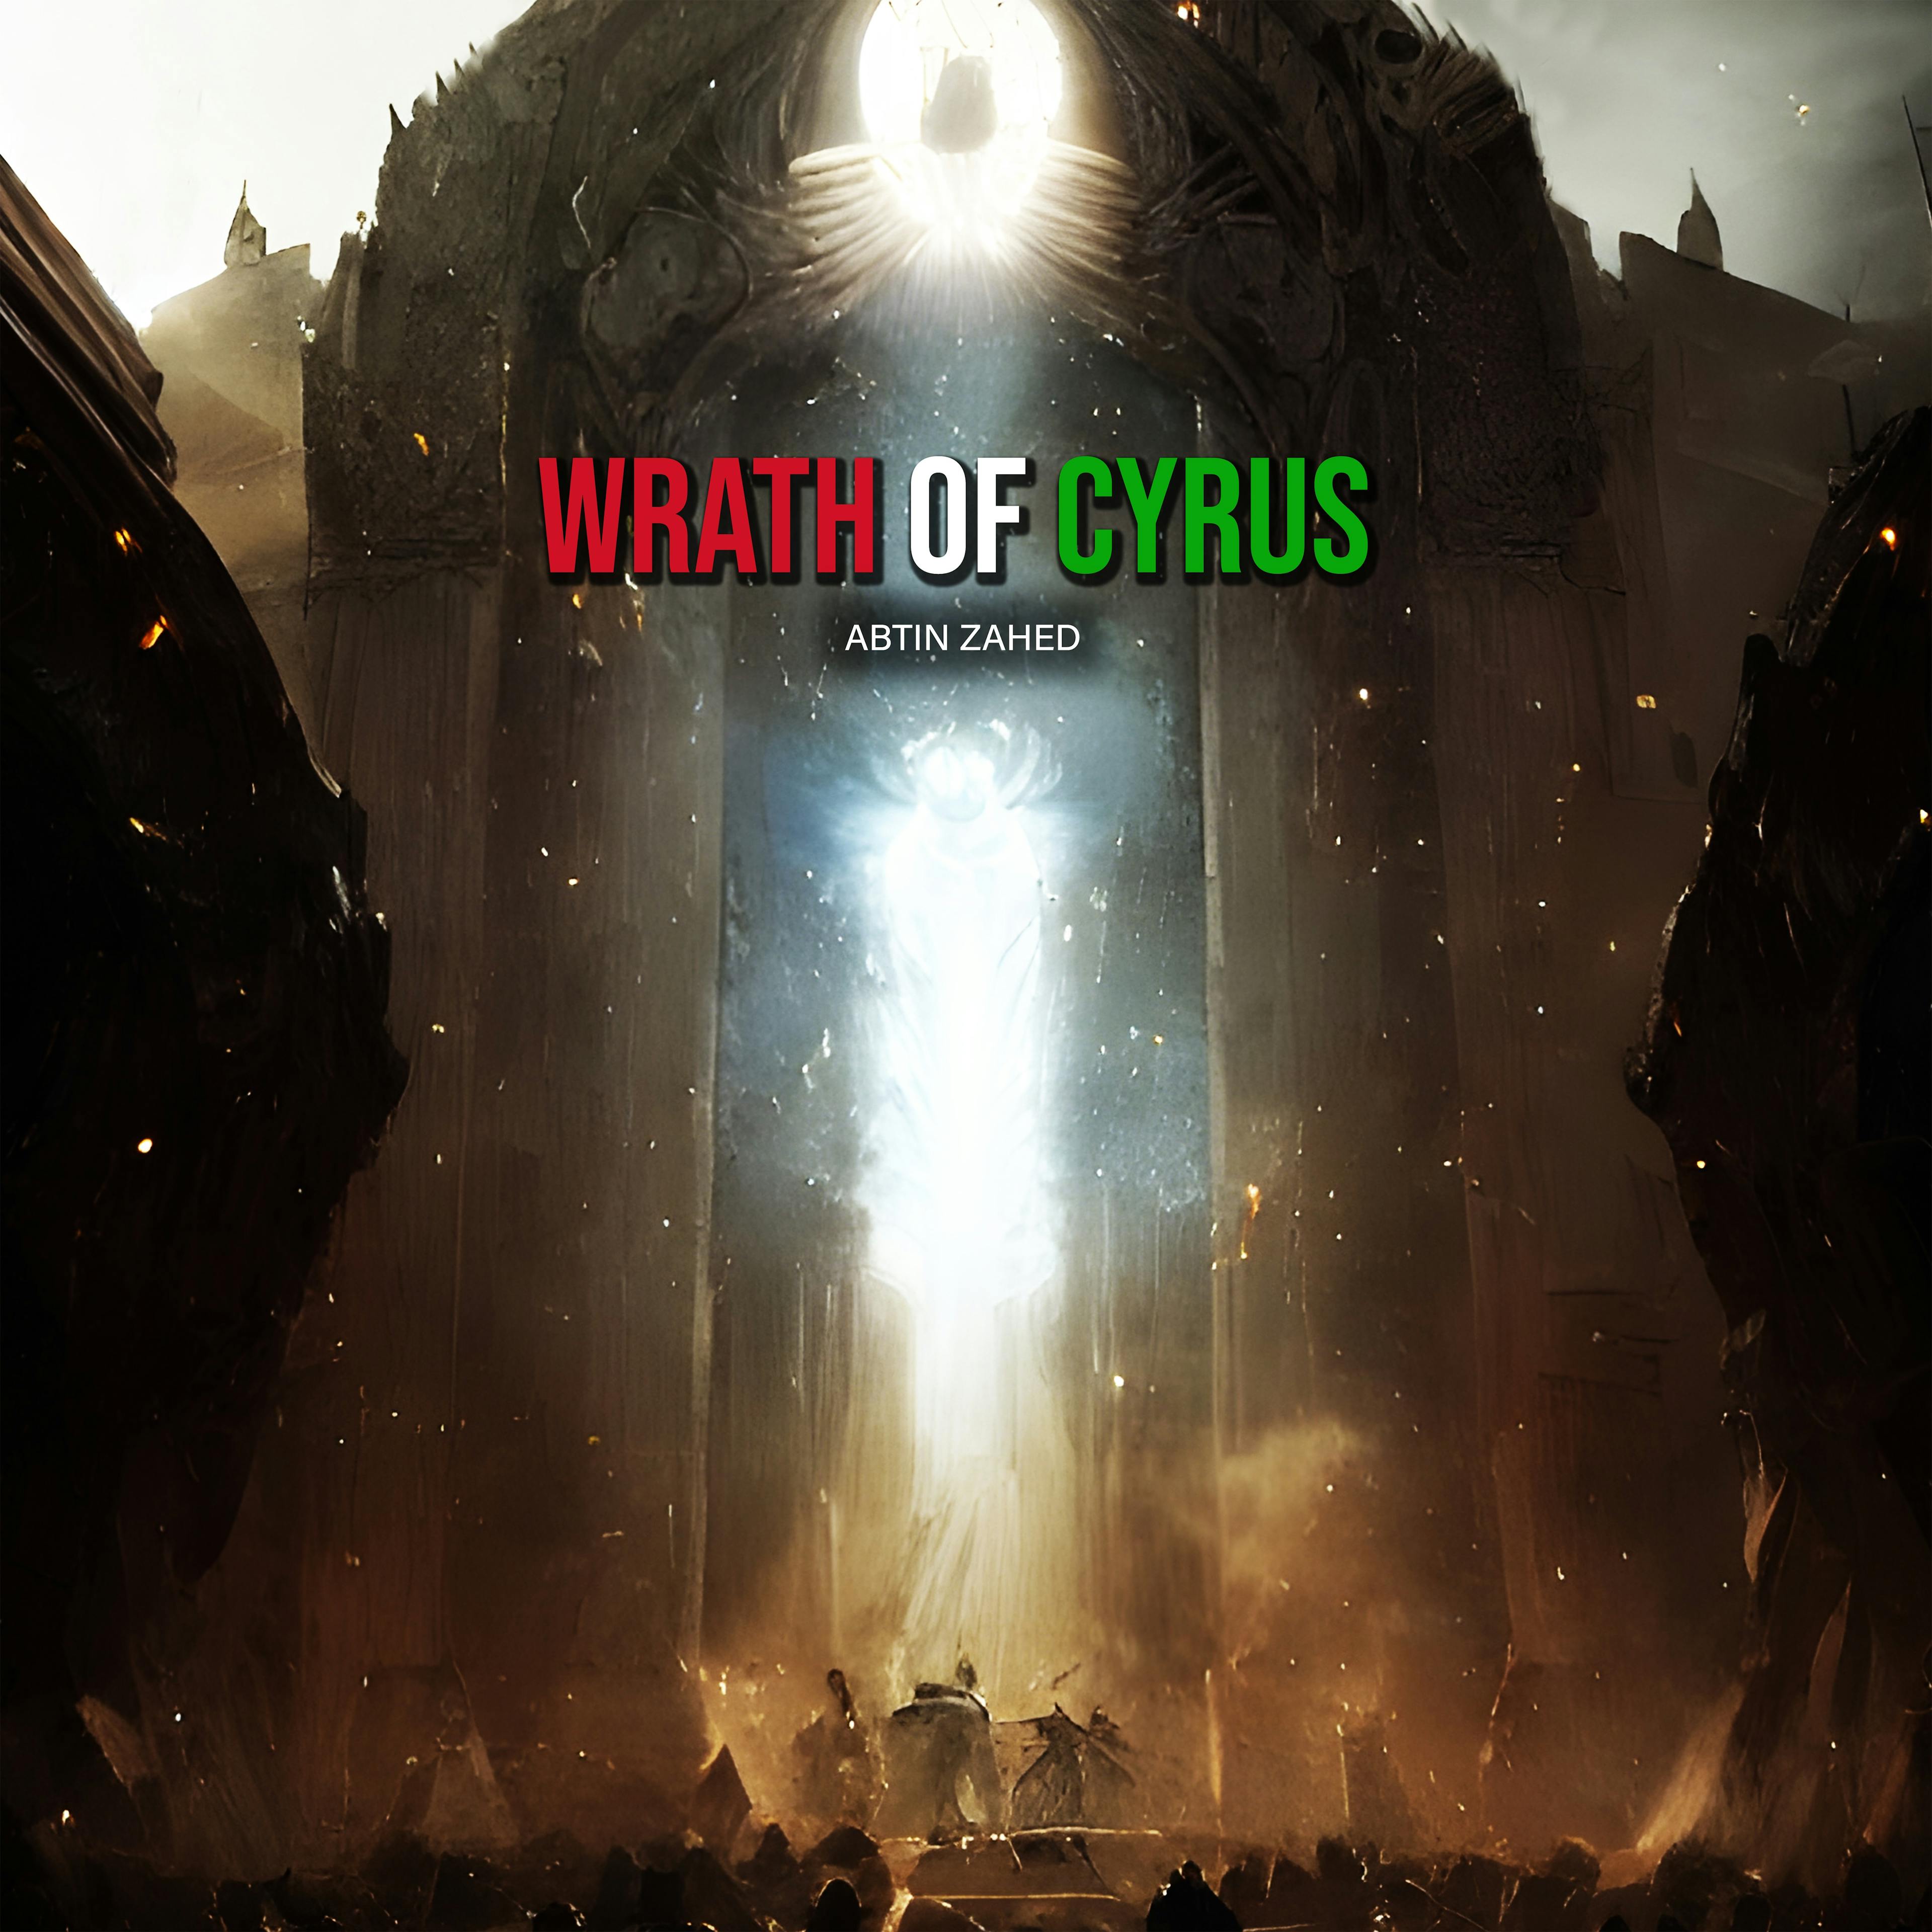 Wrath of Cyrus